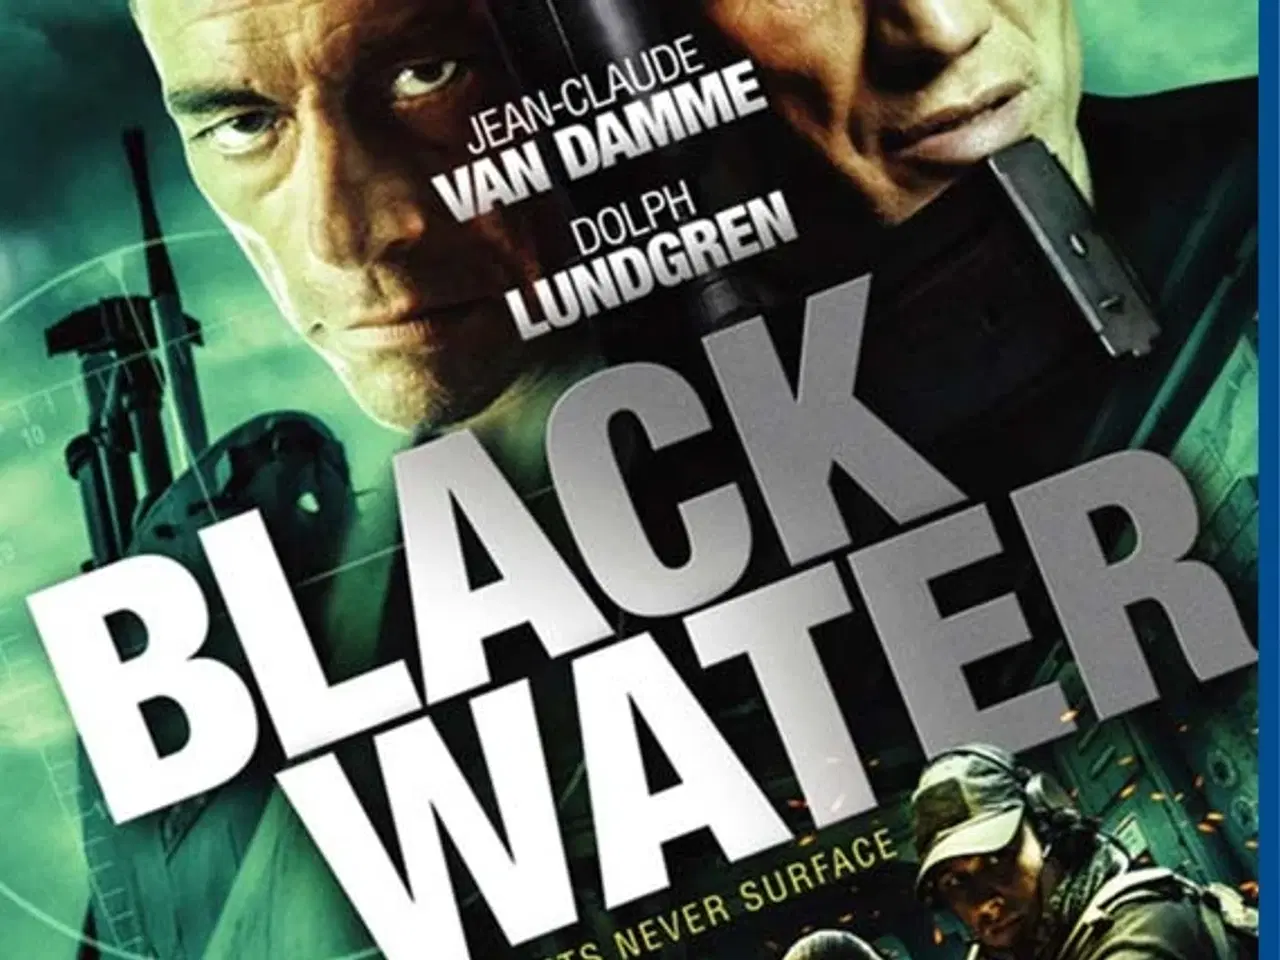 Billede 1 - Black Water (Blu-ray) Van Damme/Dolph Lunddgren